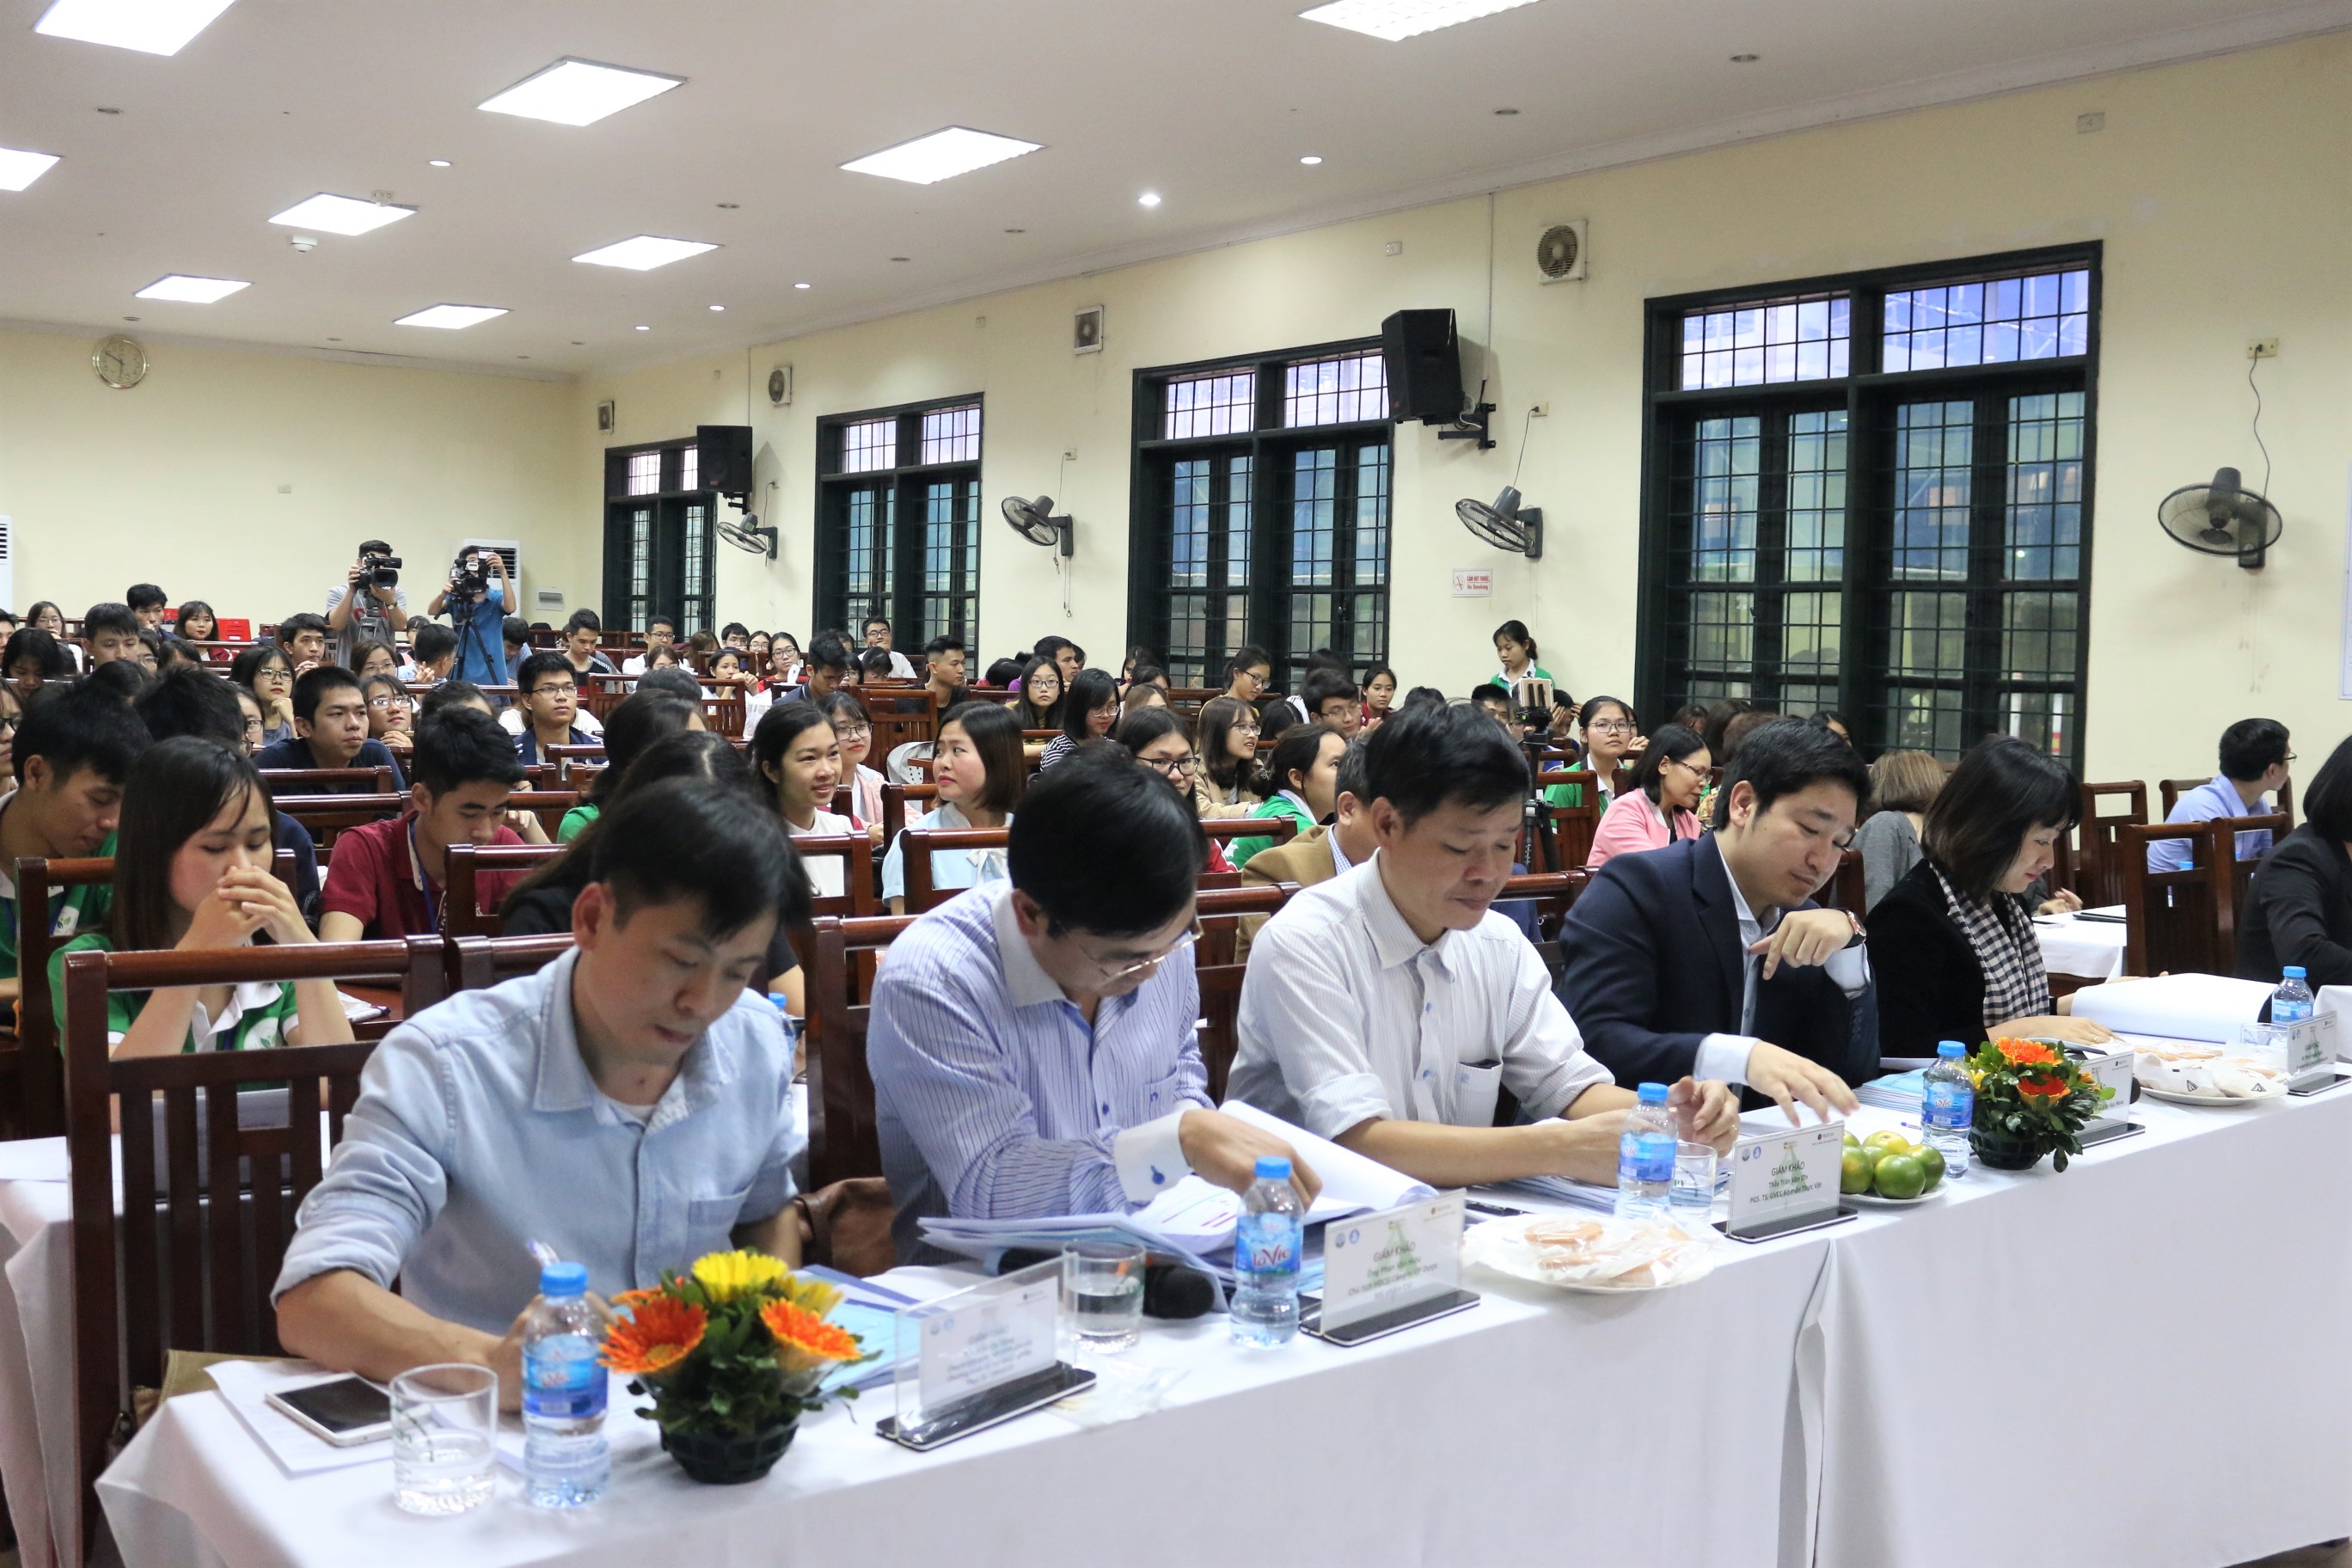 Gần 200 sinh viên trường Đại học Dược Hà Nội hào hứng quan tâm tới đêm chung kết Khởi nghiệp Dược.